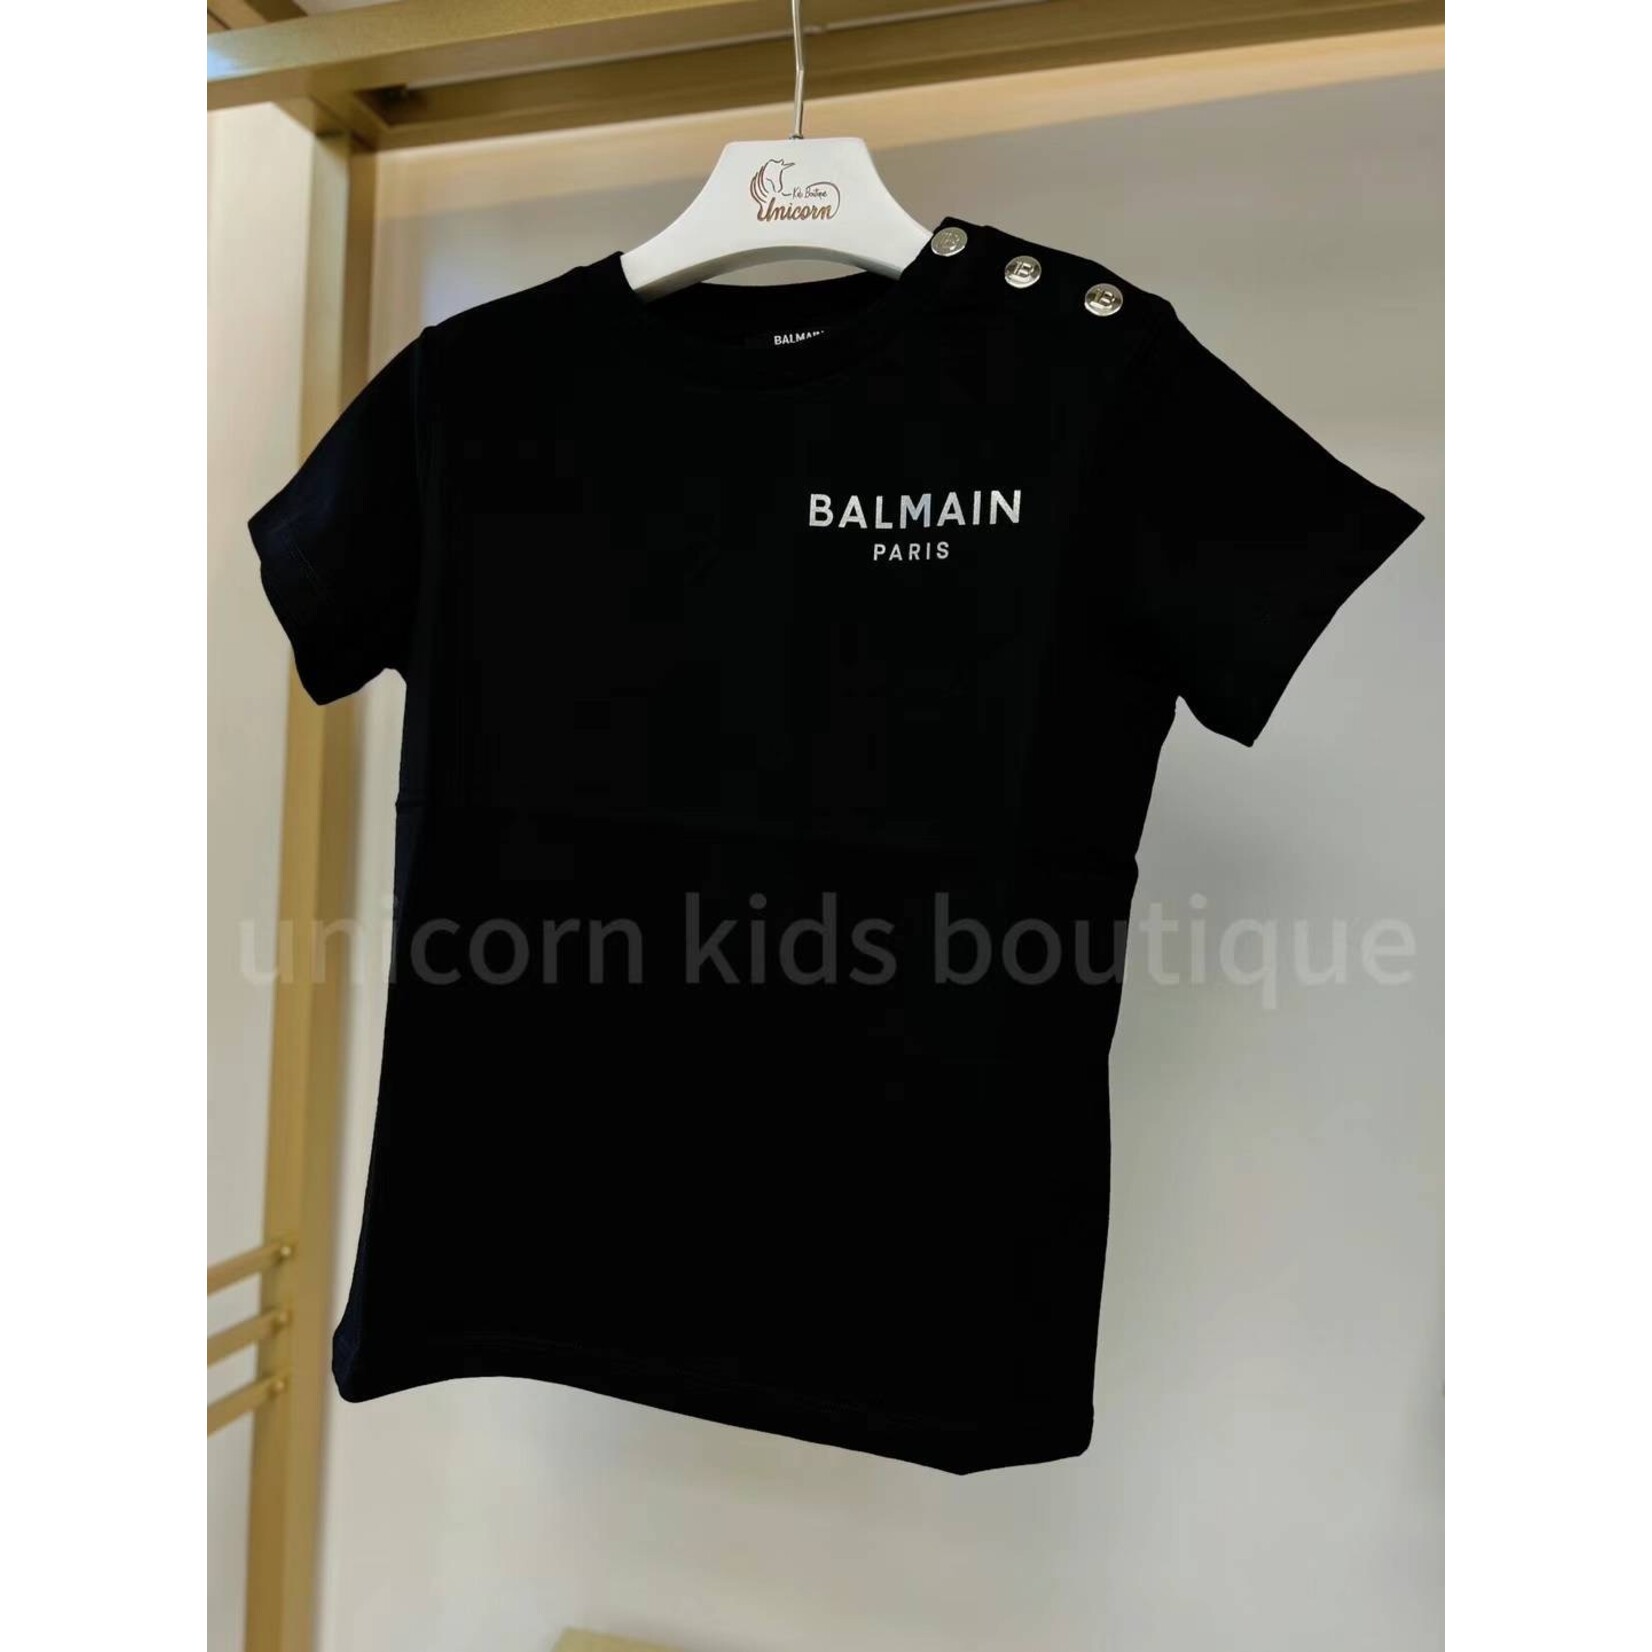 Balmain Balmain Logo Teens T-Shirt with Buttons